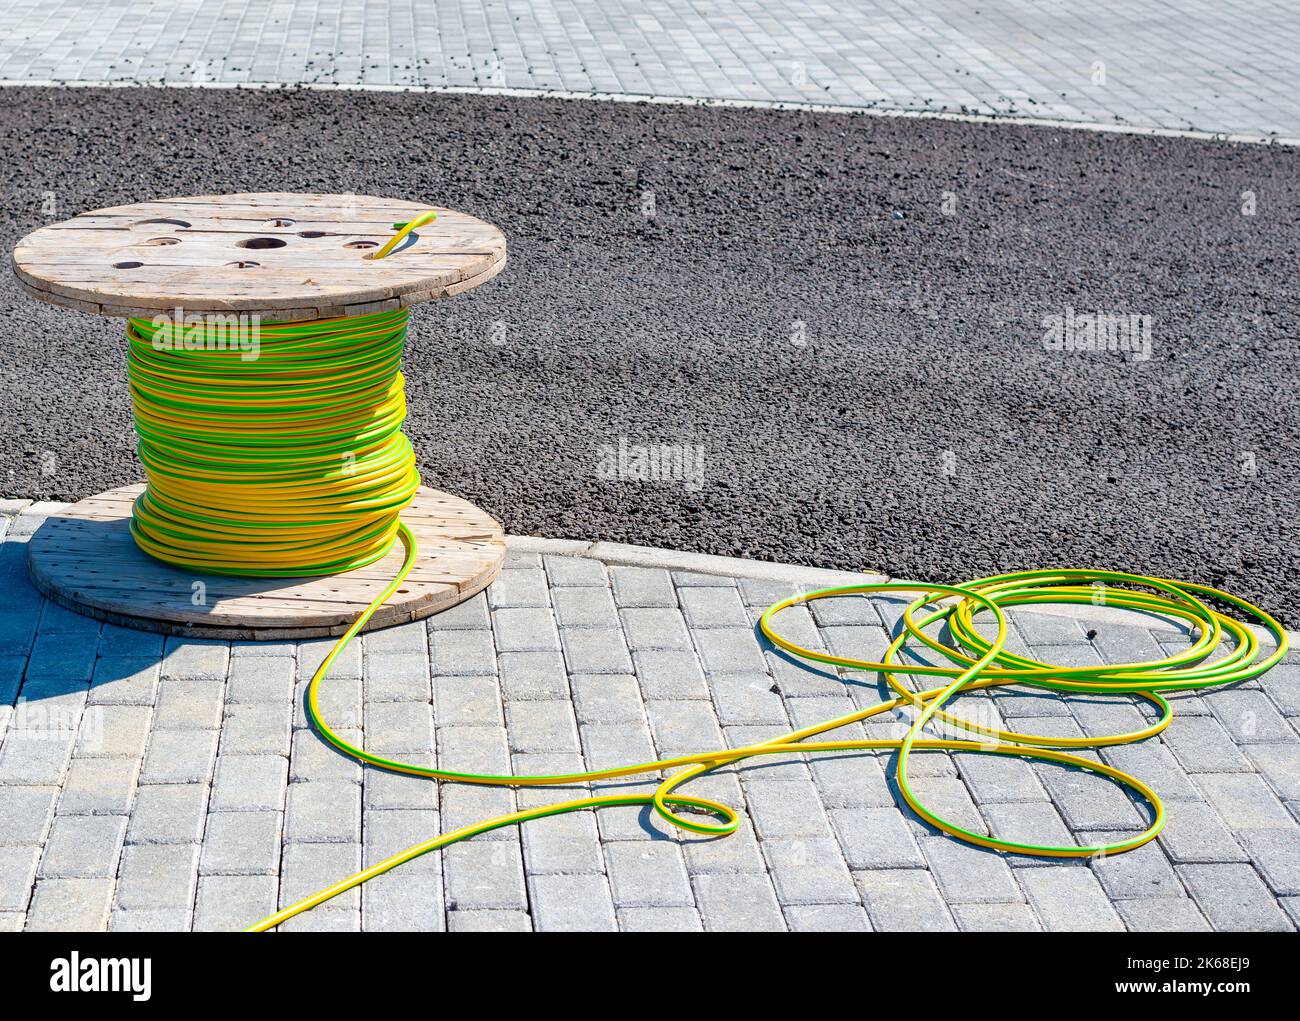 Cable cable eléctrico con bobina de madera de cable eléctrico a la espera de ser deslizado hacia el conducto Foto de stock